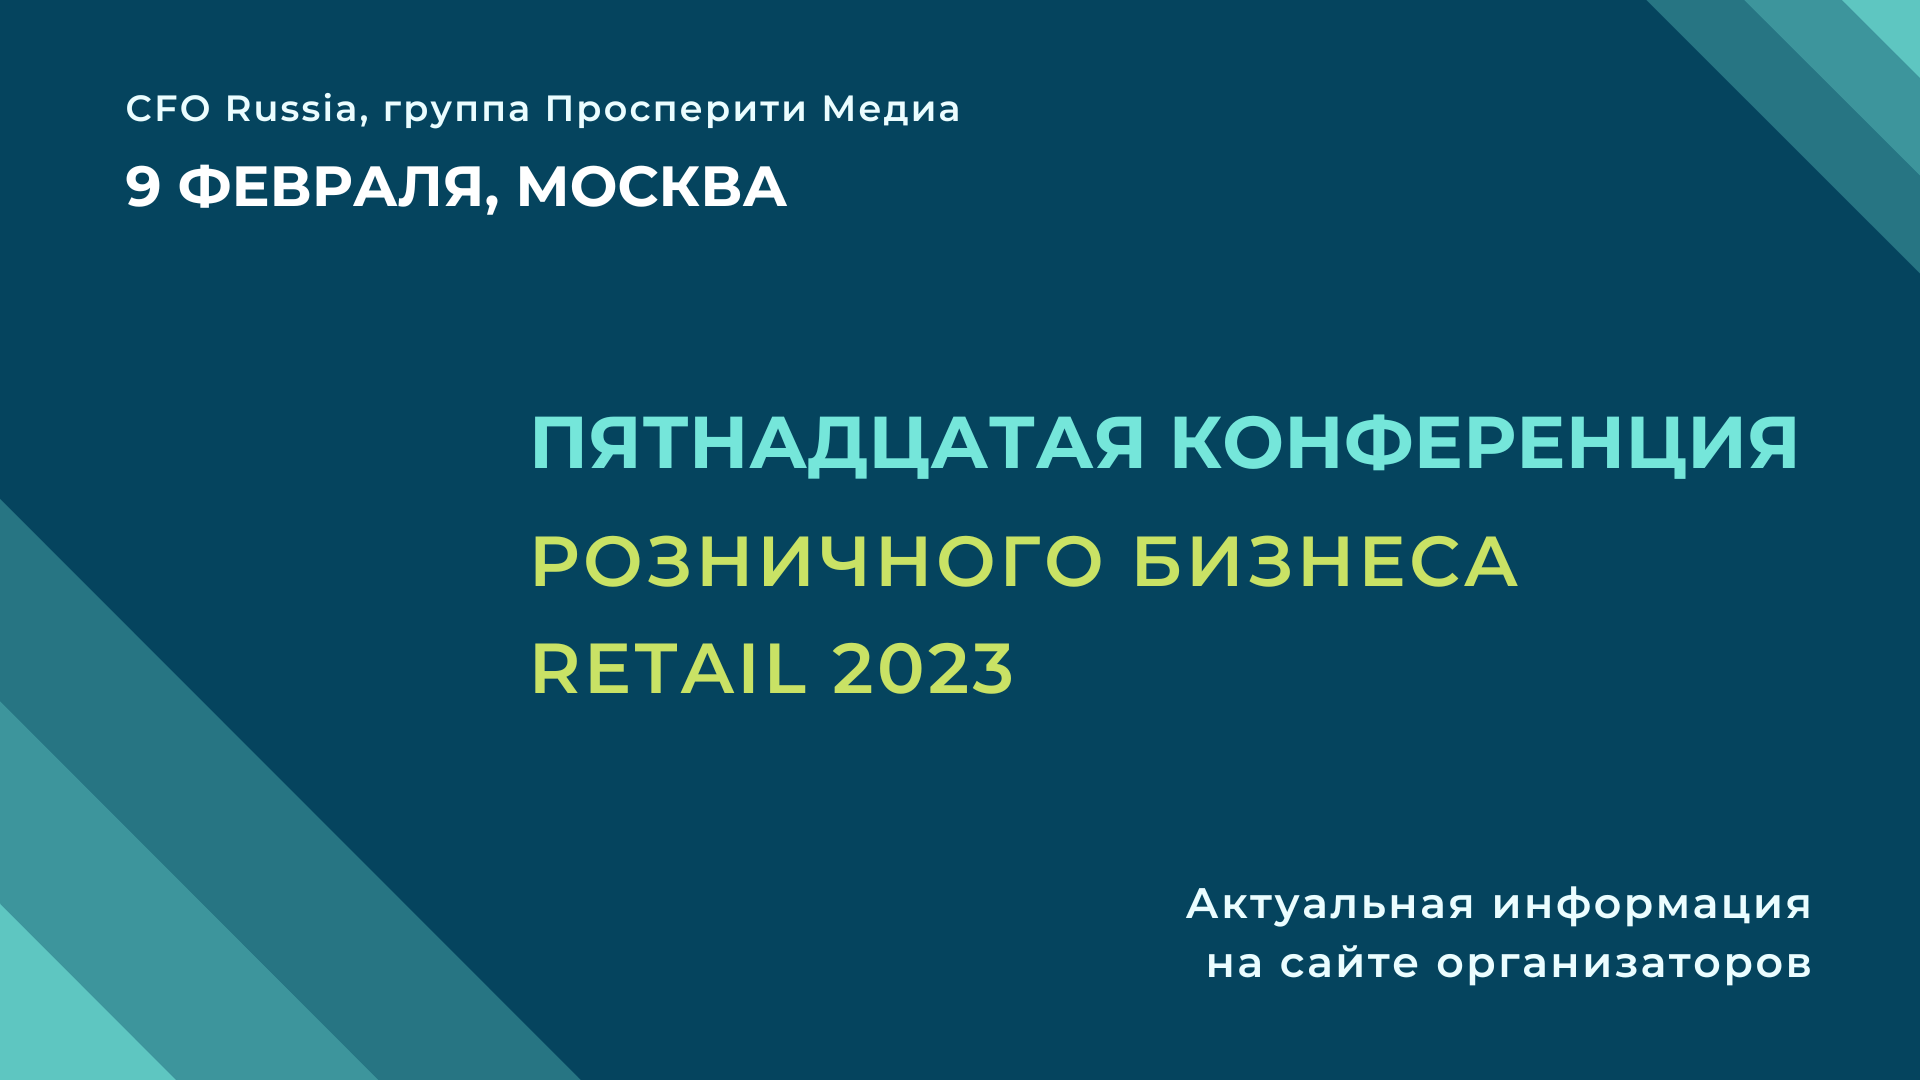 Конференция розничного бизнеса Retail 2023: актуальные проблемы и цифровые тренды